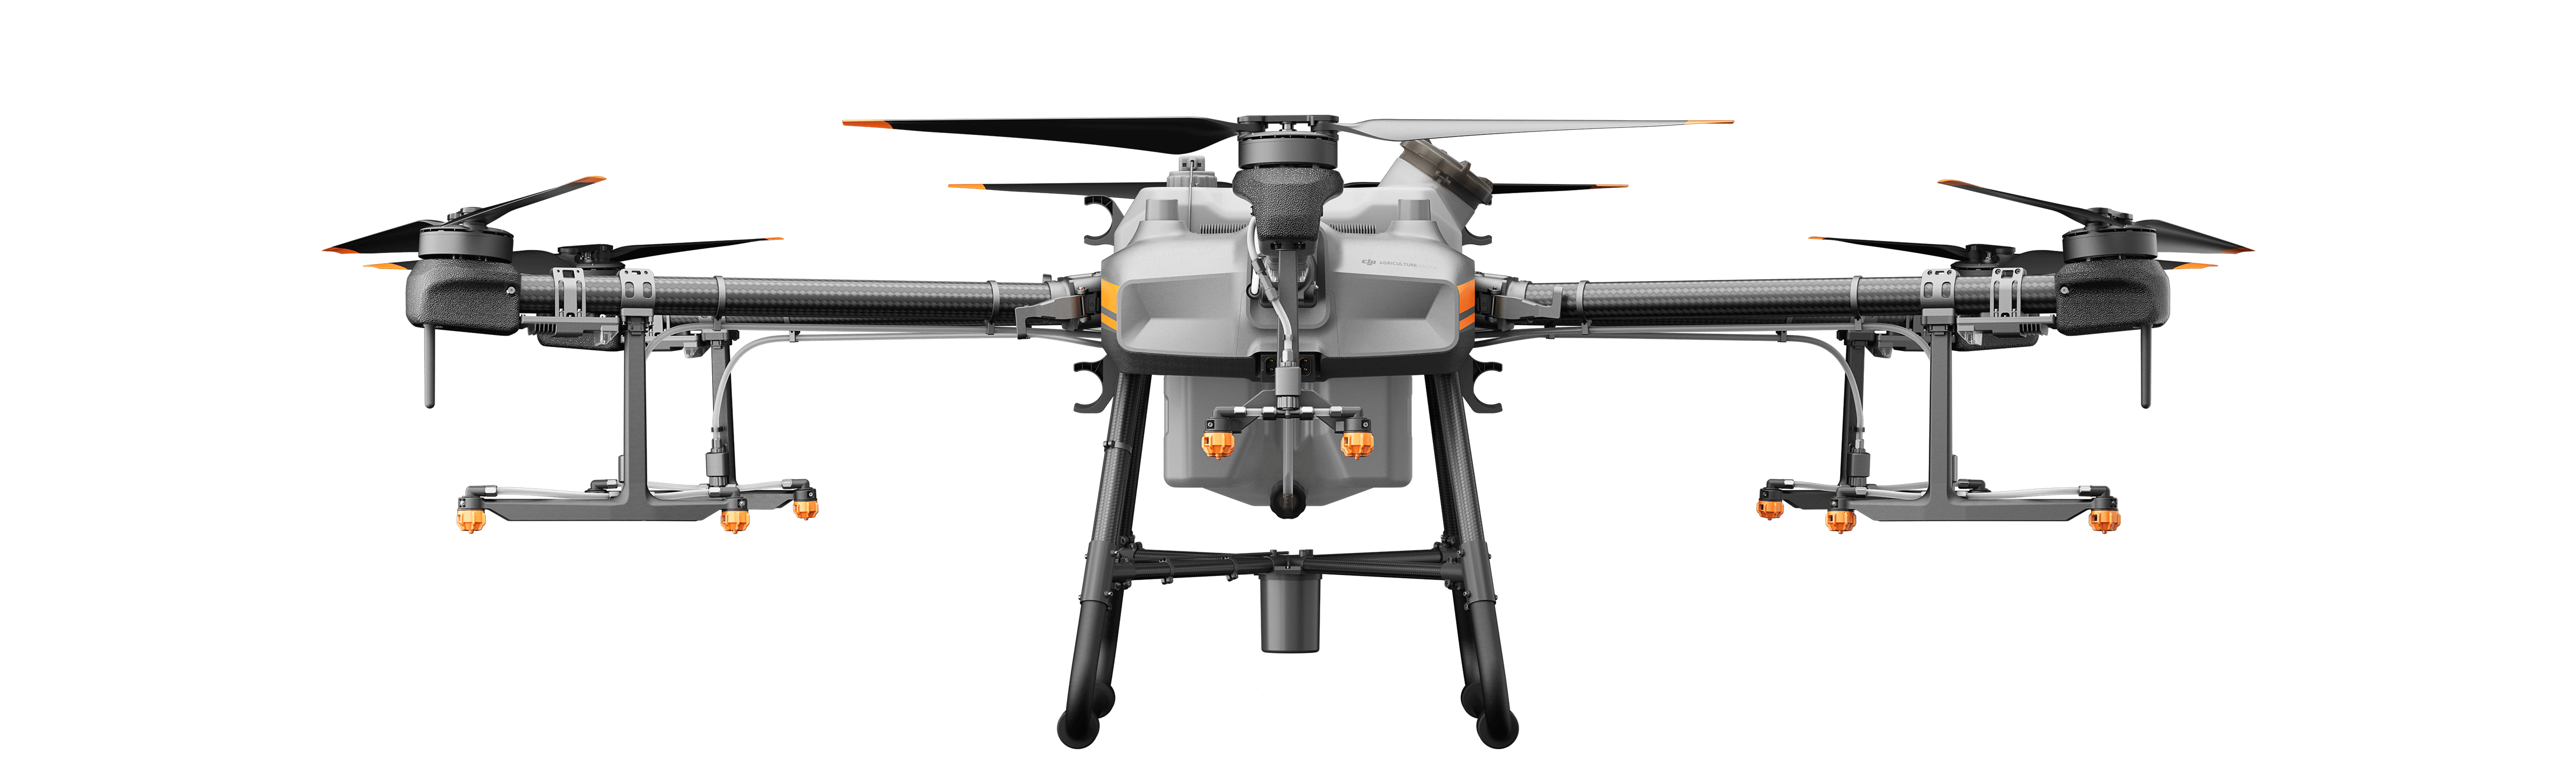 drone agras t30 dji